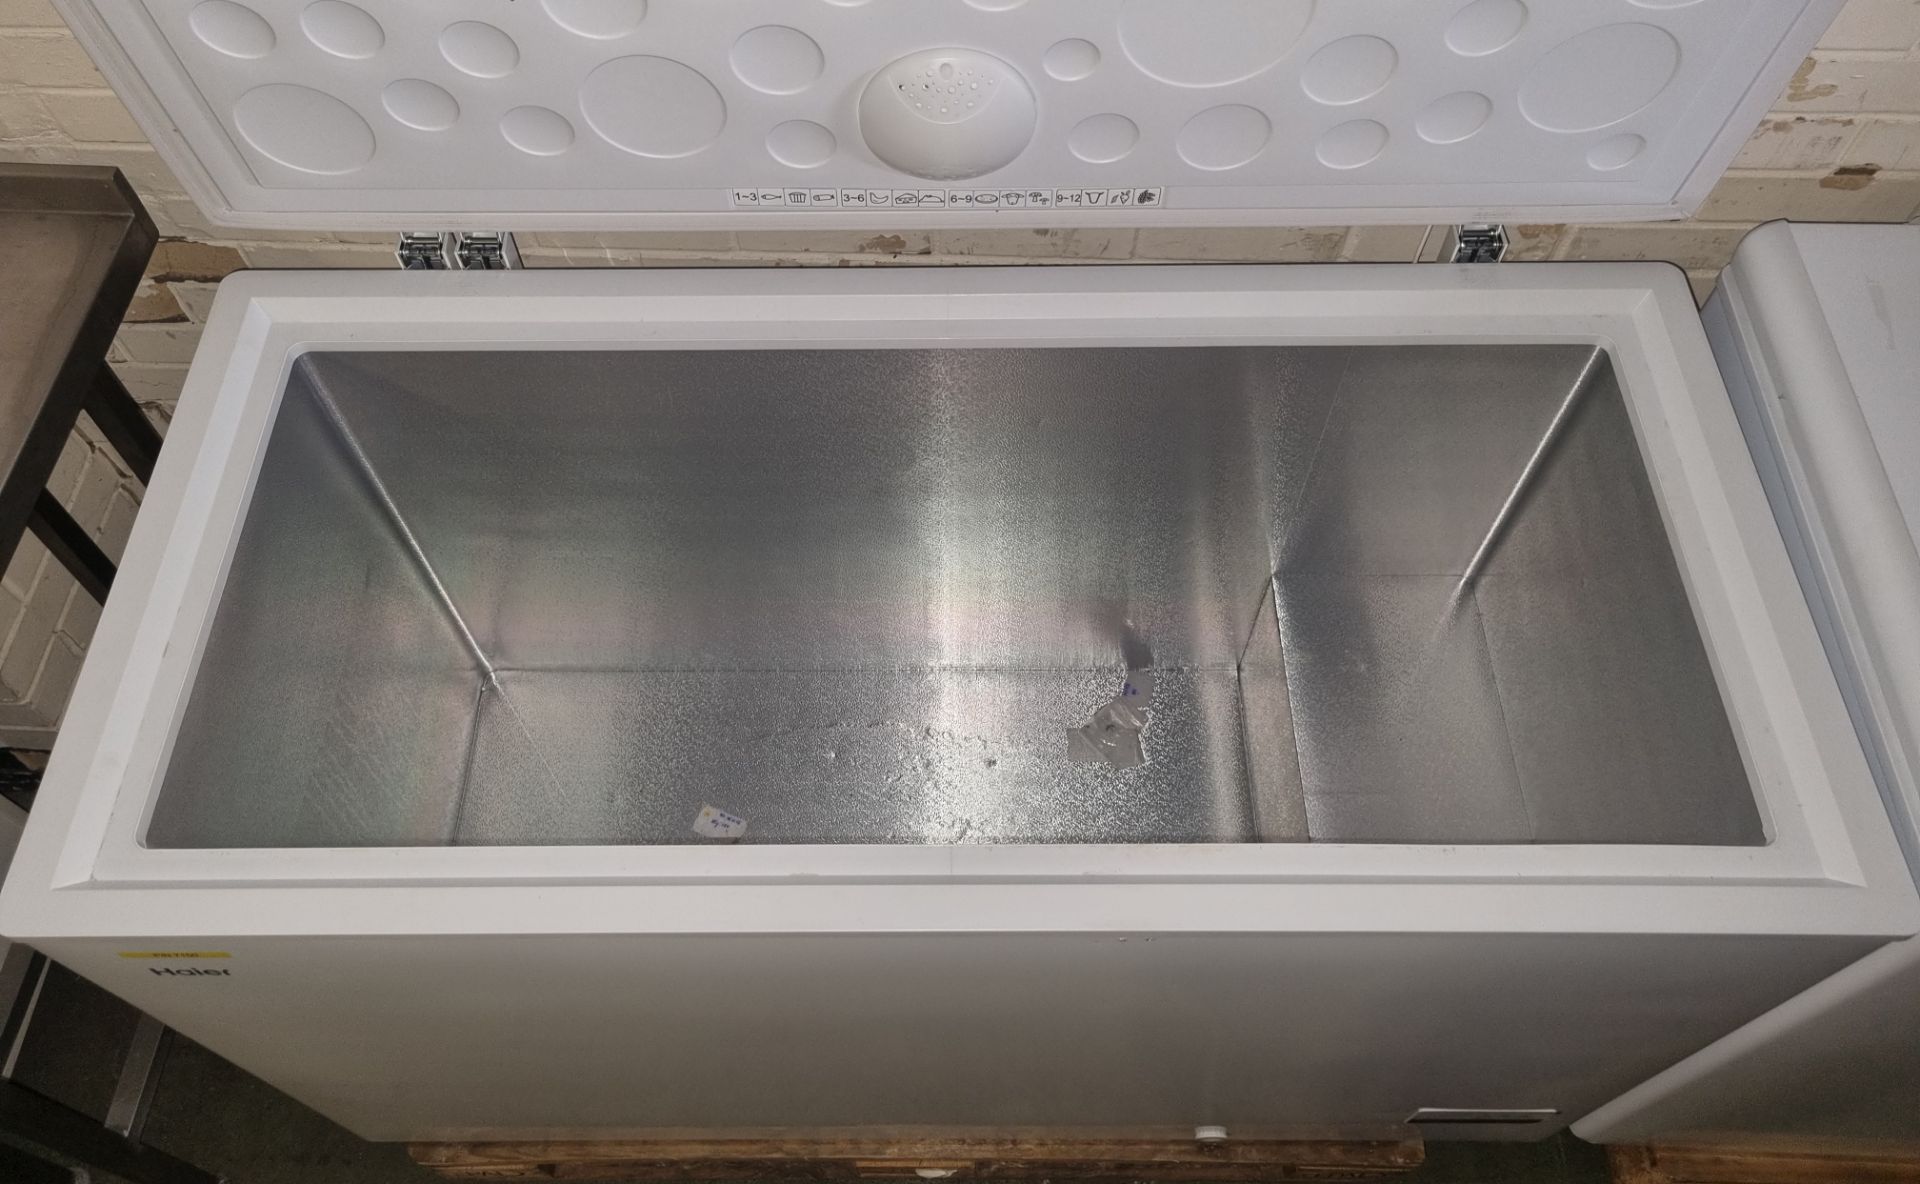 Haier HCE429F Chest Freezer - Net Vol. 413 litres, Freeze Cap. 28kg - 140x65x85cm - Image 4 of 4